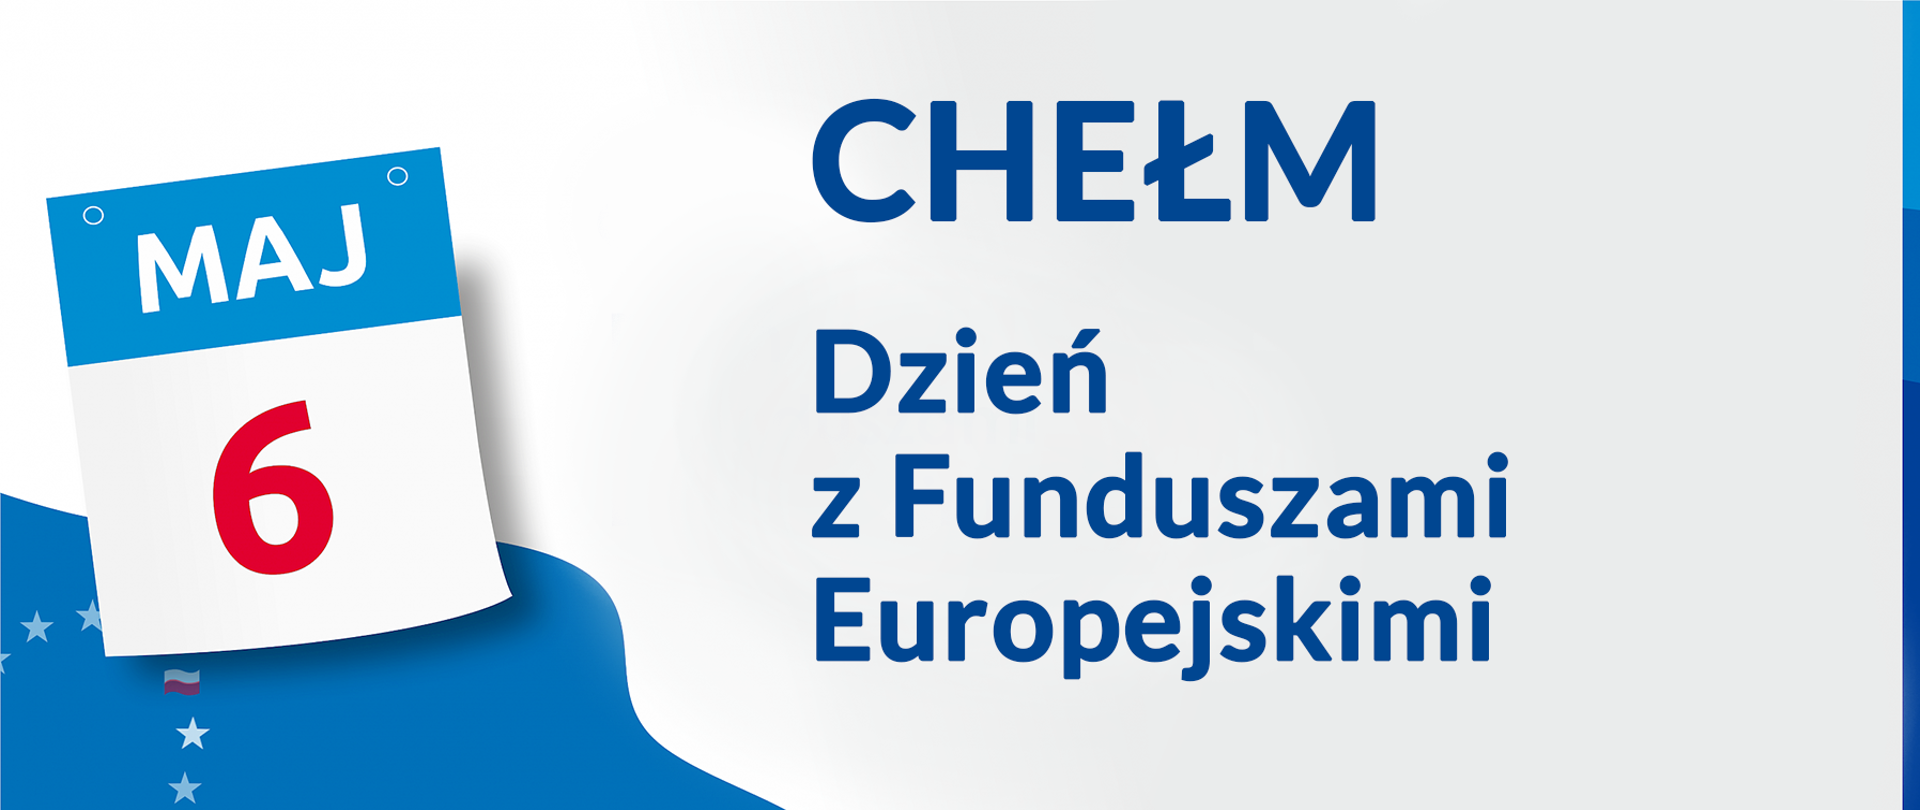 Zdjęcie przedstawia grafikę z napisem Maj 6 Chełm Dzień z Funduszami Europejskimi